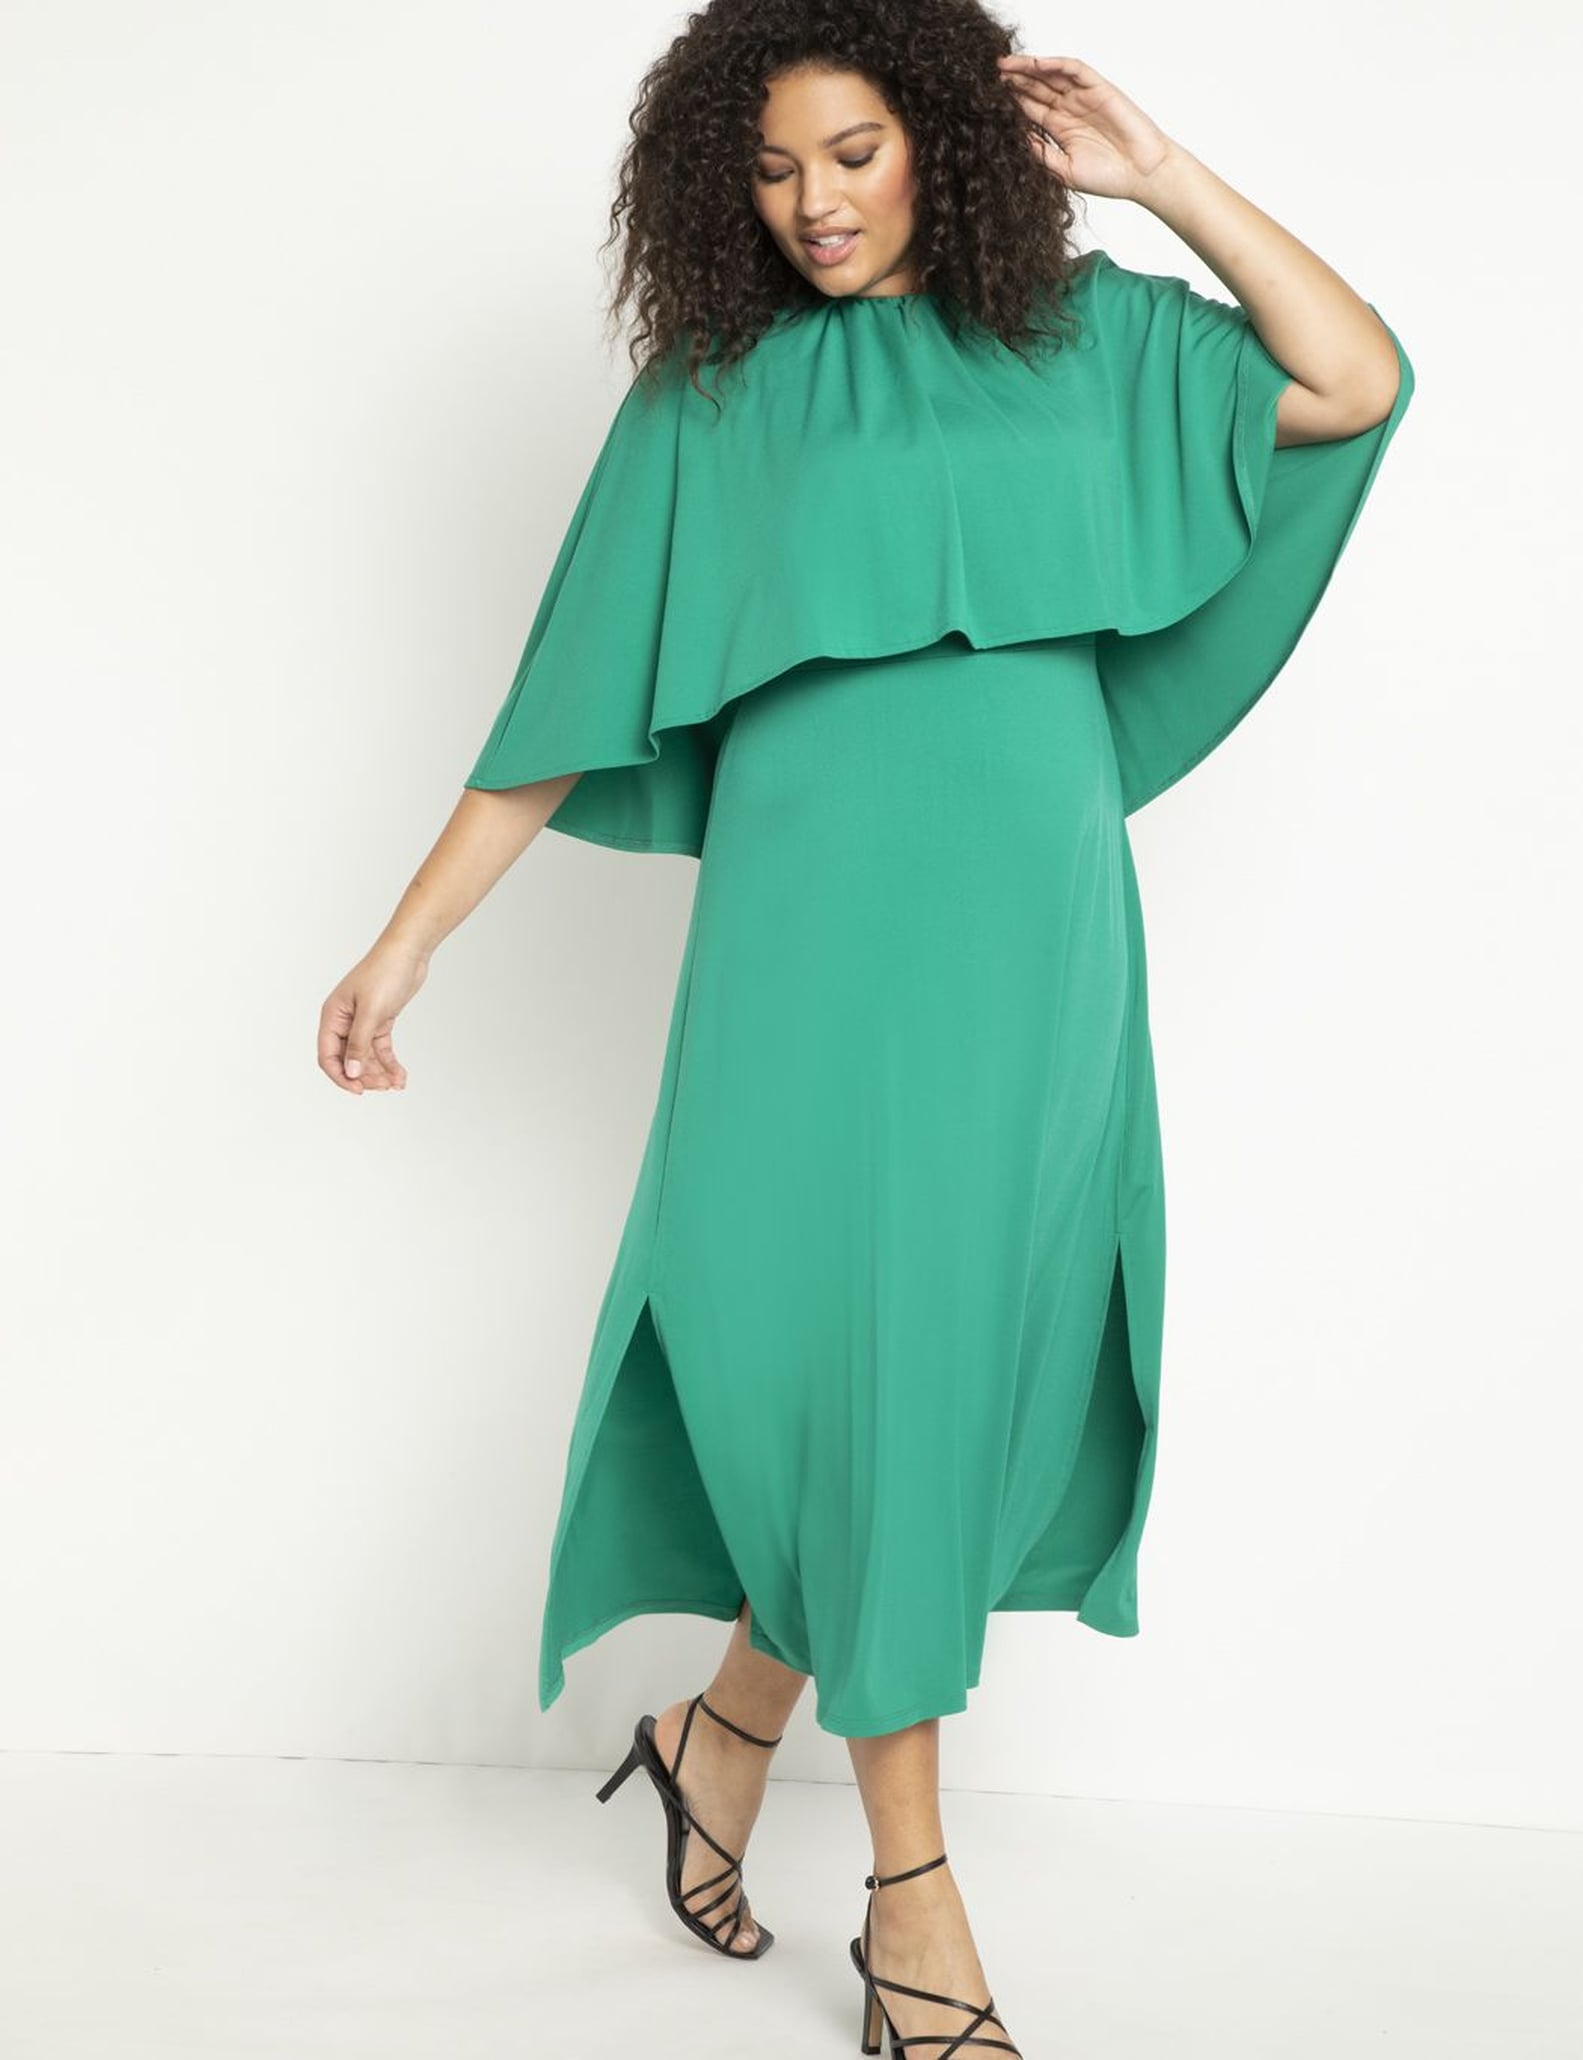 Shop Tiffany Haddish's Emerald Azeeza Dress in Venice | POPSUGAR Fashion